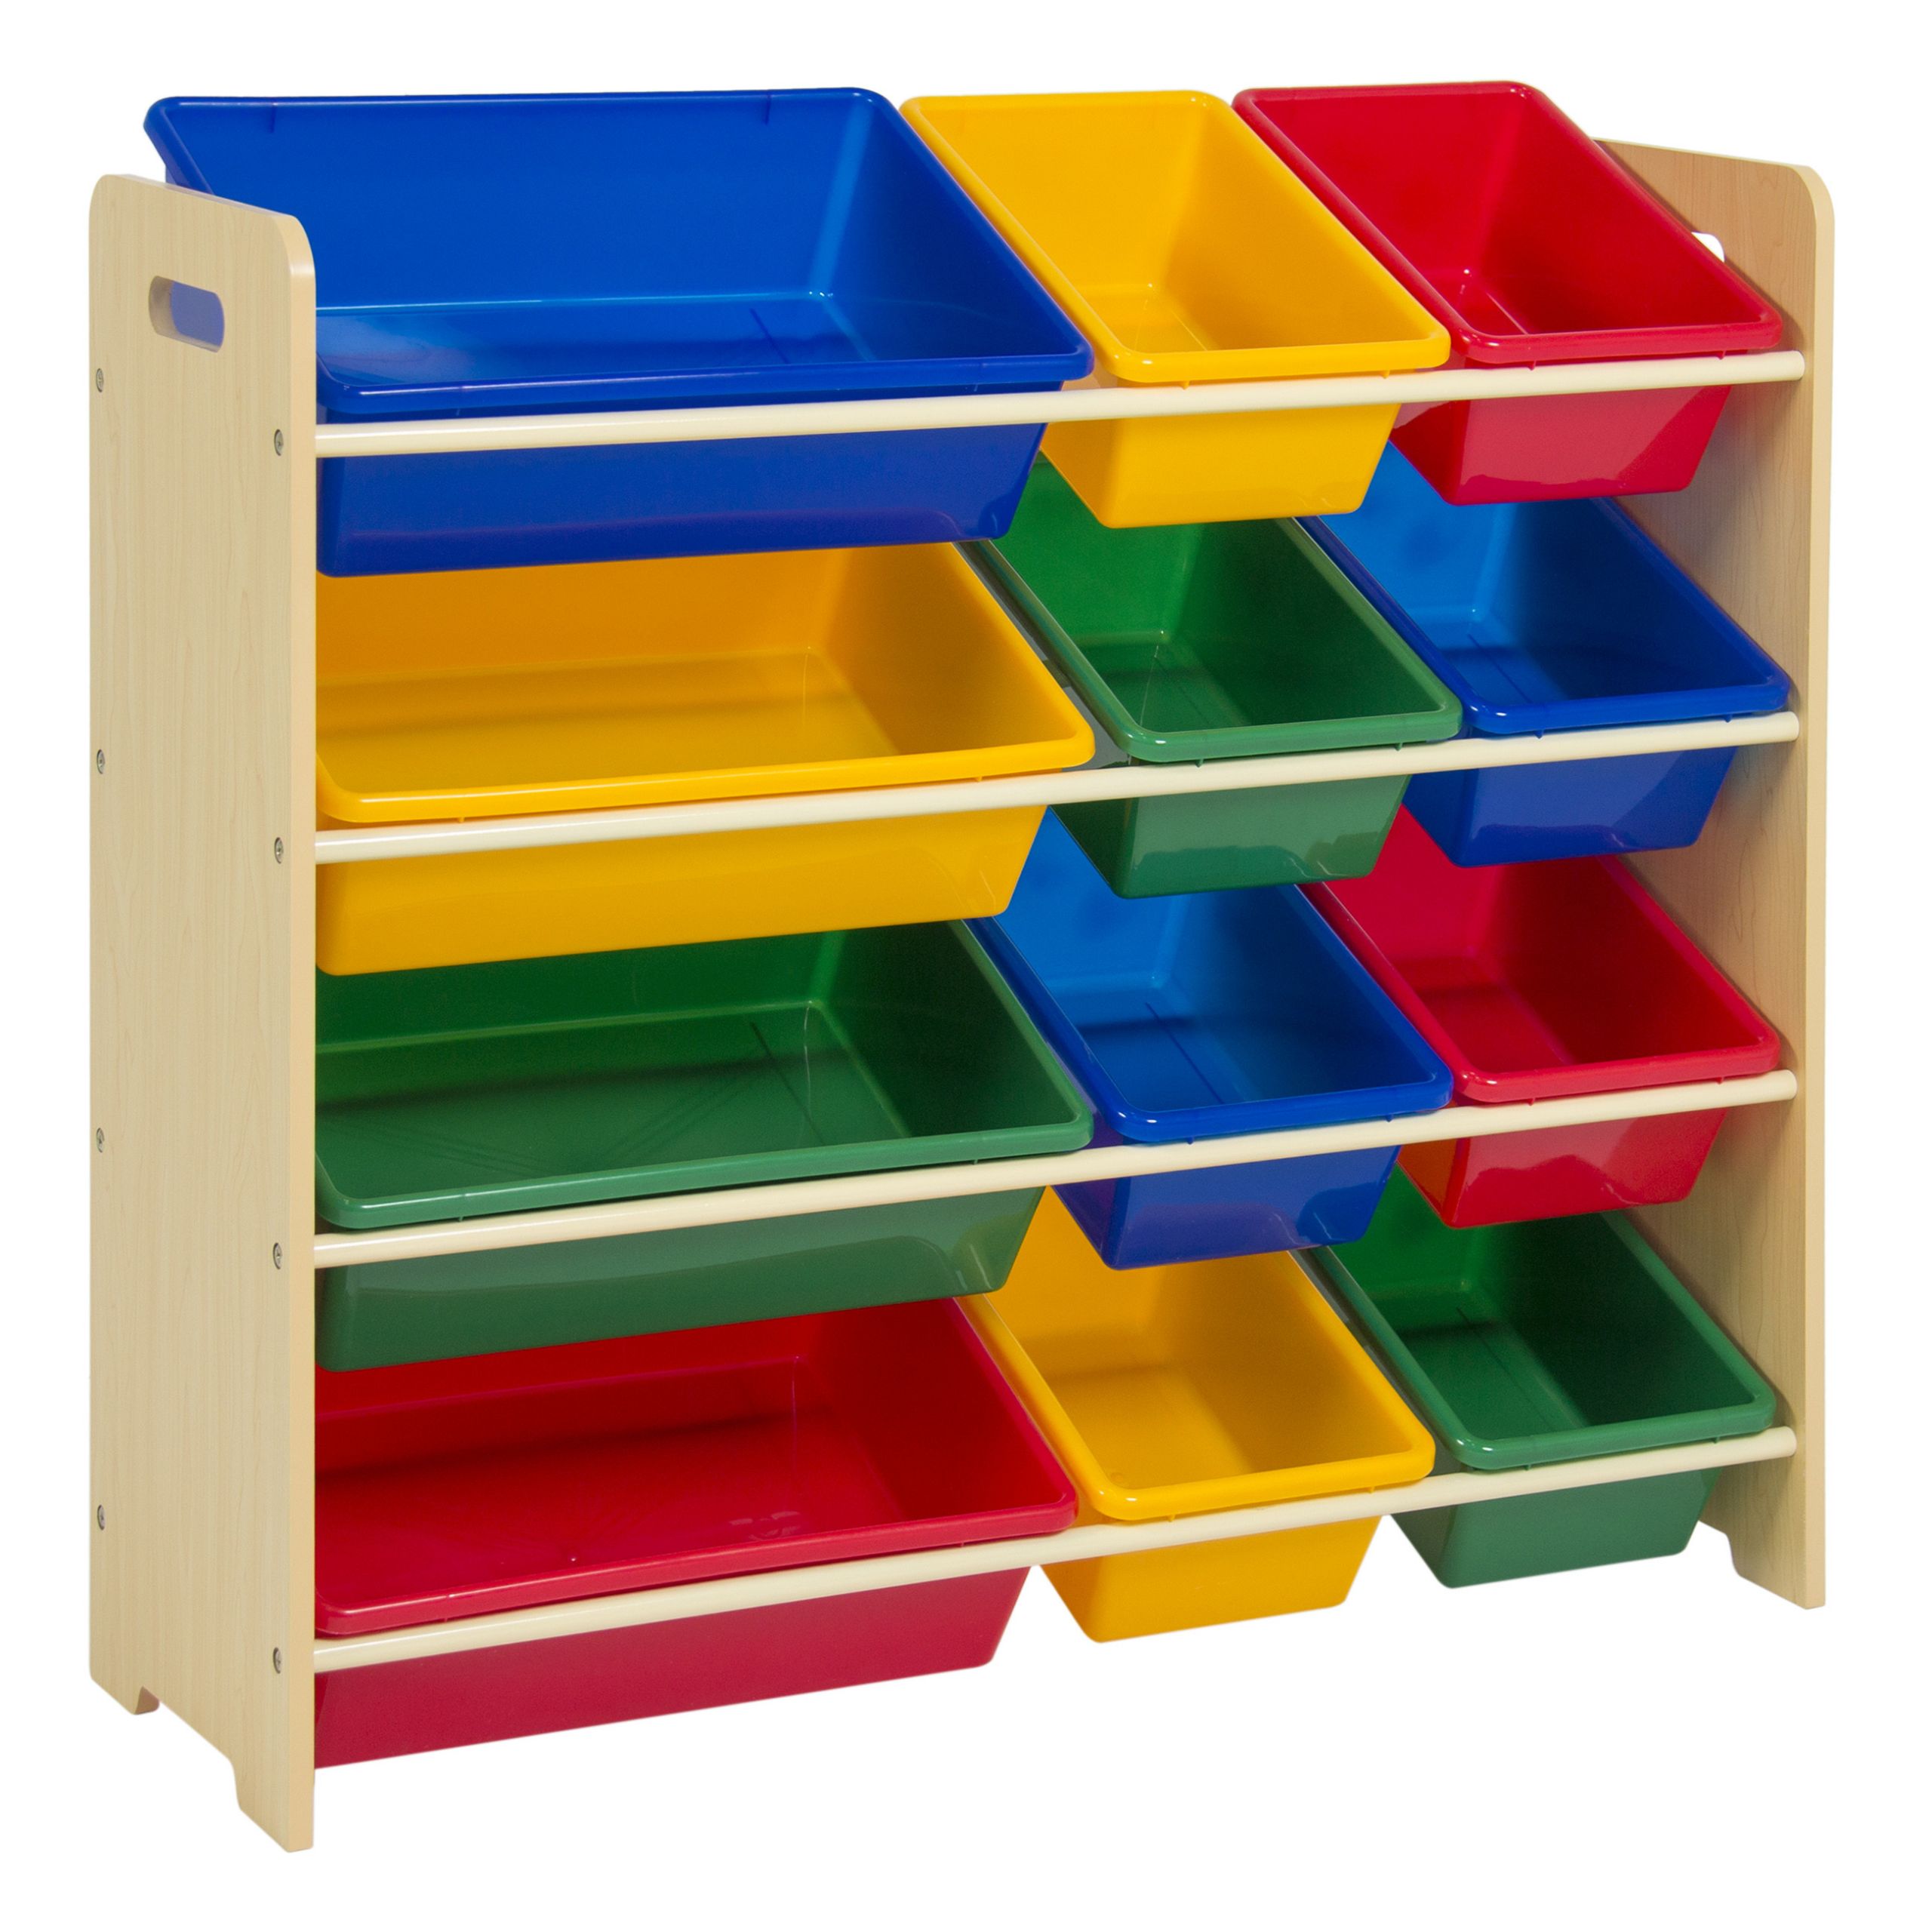 Kids Storage Containers Unique toy Bin organizer Kids Childrens Storage Box Playroom